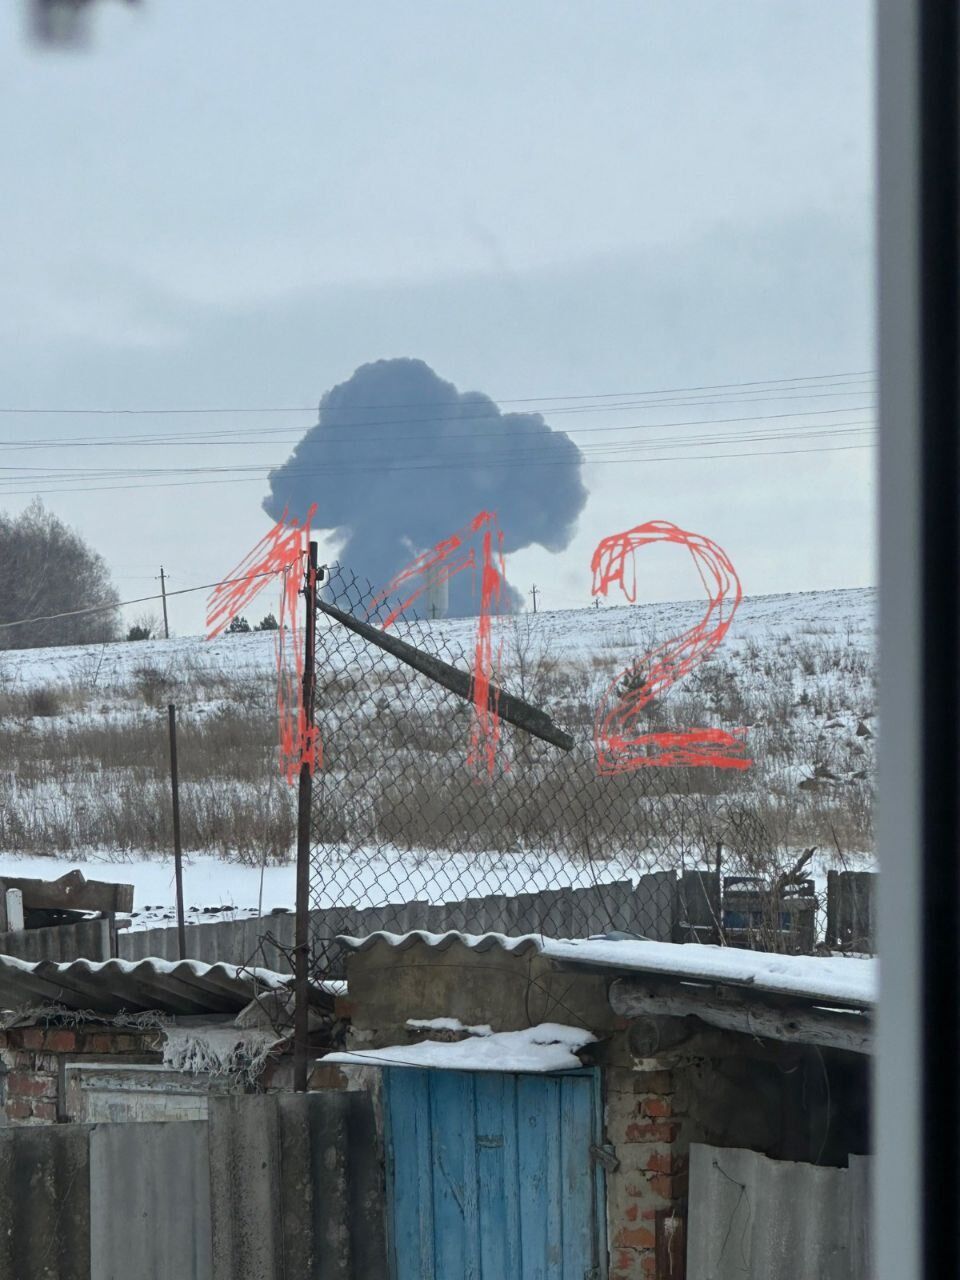 Піднявся вогняний гриб: момент падіння Іл-76 у Бєлгородській області РФ потрапив на відео